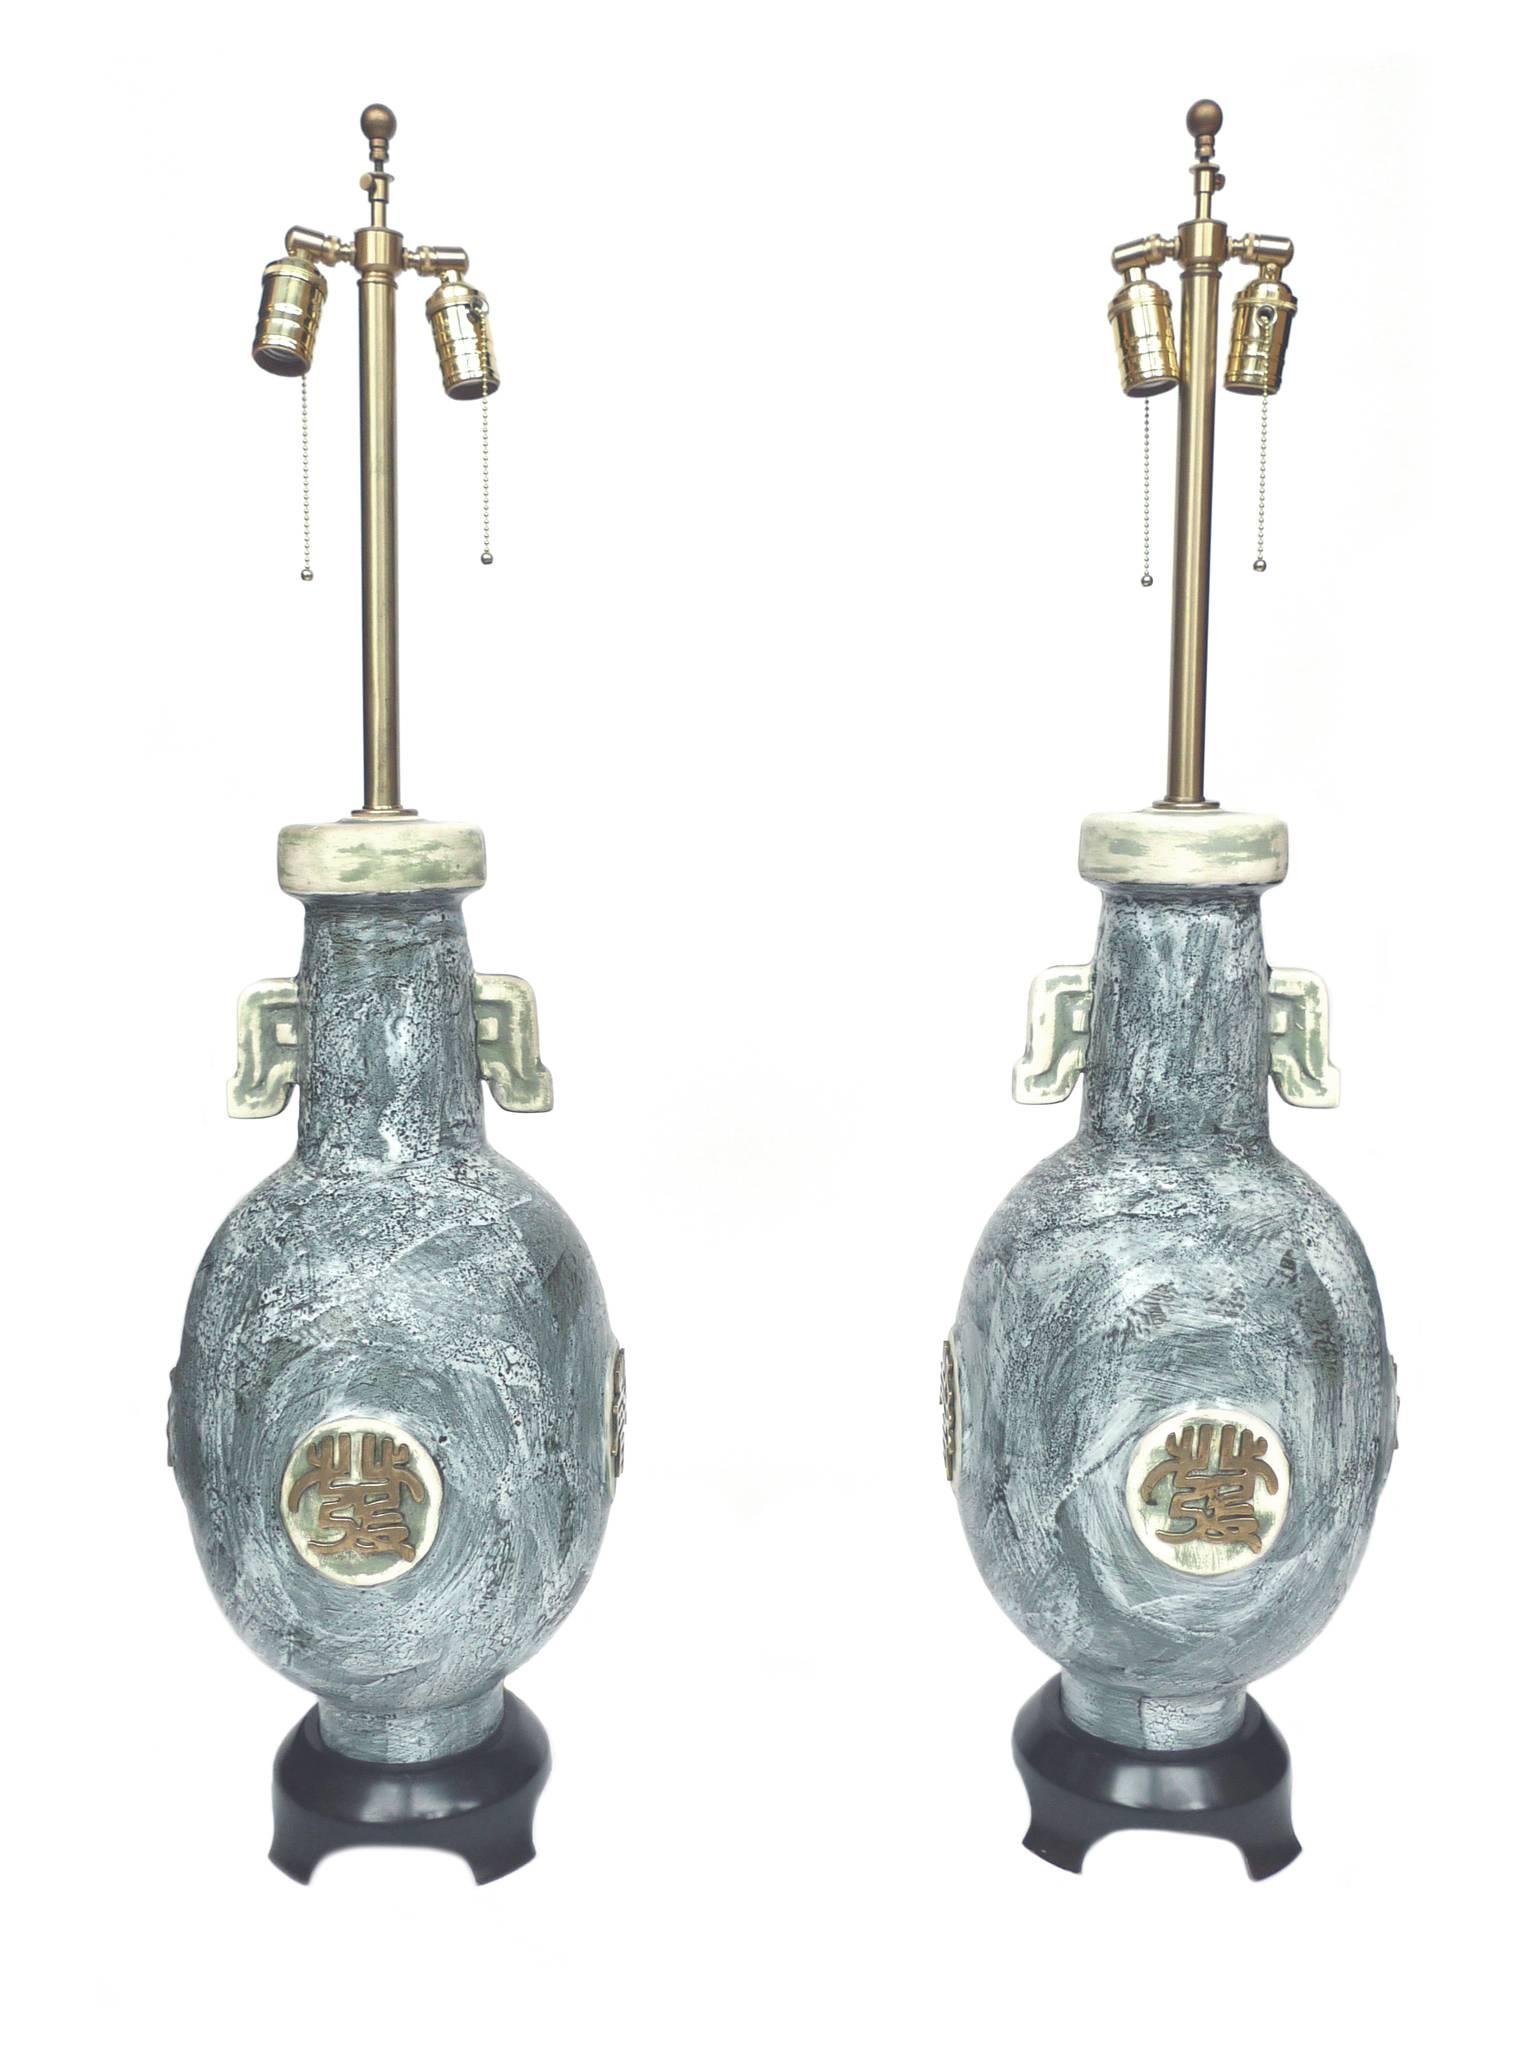 Diese Lampen wurden von der Marbro Lamp Company hergestellt. Ihr Design besteht aus einem Keramikgefäß mit einer malerischen blaugrauen Glasur und stilisierten Messingverzierungen auf jeder Seite der Lampe. Die Sockel sind aus ebonisiertem Holz. Die